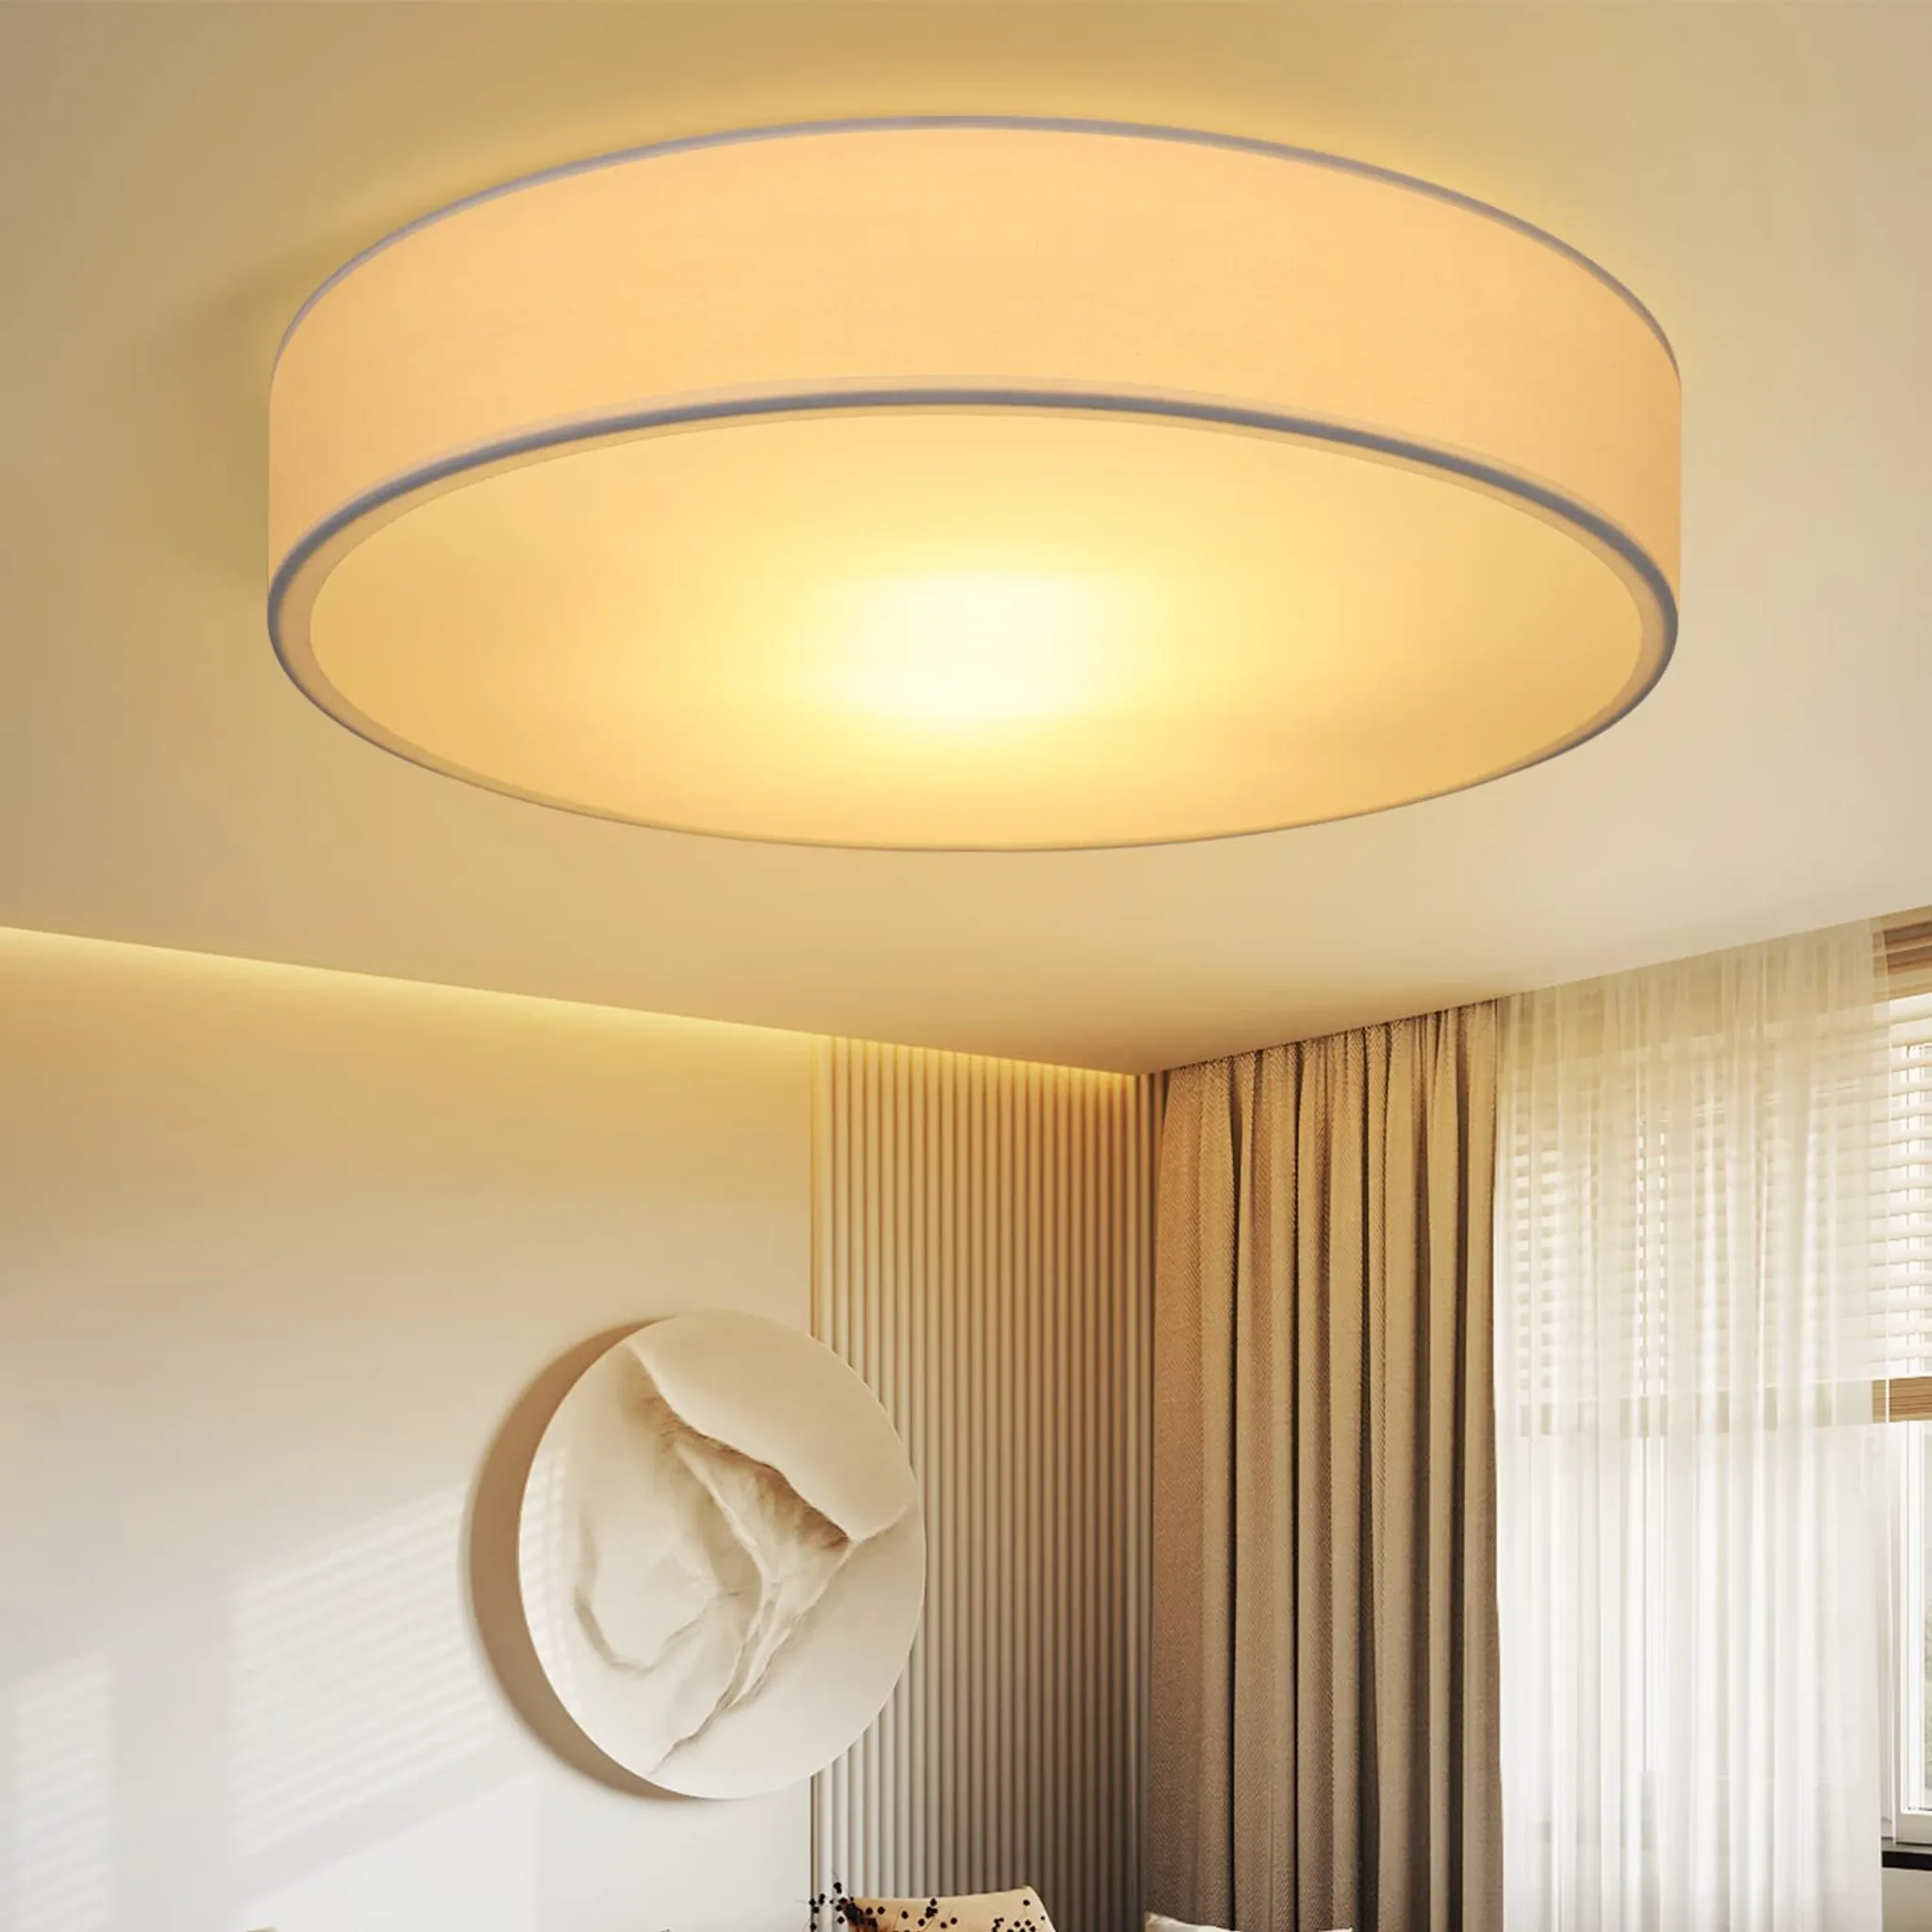 ZMH Deckenlampe Schlafzimmer Deckenleuchte Rund Stoff - Weiß Küchenlampe 2Flammig Stoffschirm E27 mit Wohnzimmerlampe Modern Schlafzimmerlampe